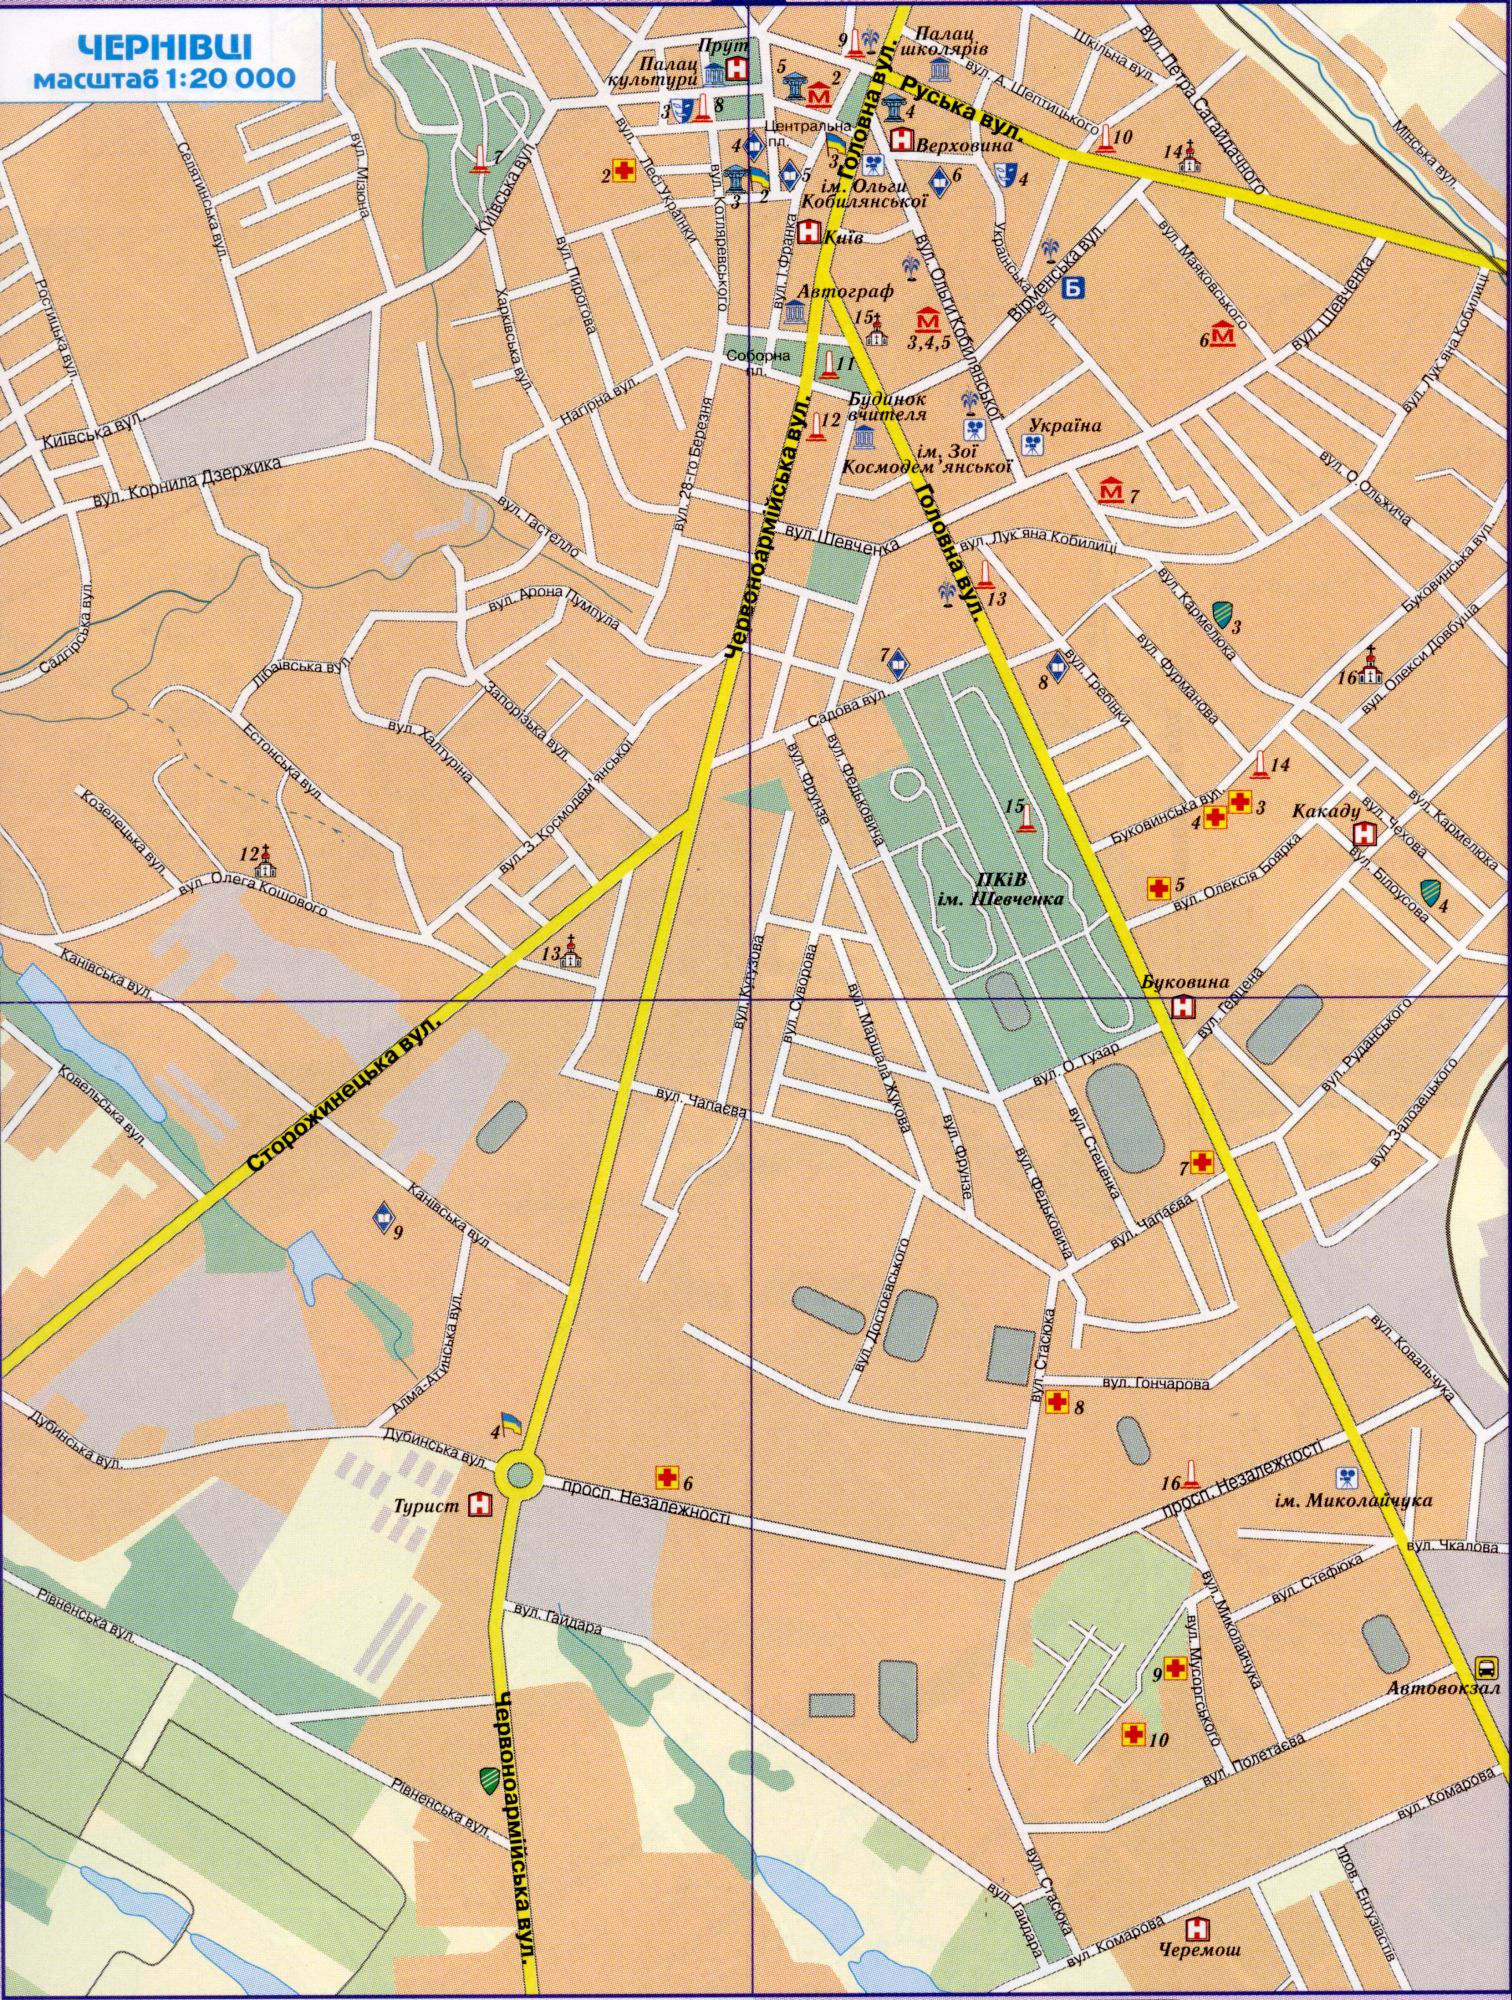 Map of Chernivtsi detailed (Ukraine city of Chernivtsi) in 1 cm 200 meters. Download a detailed map of highways